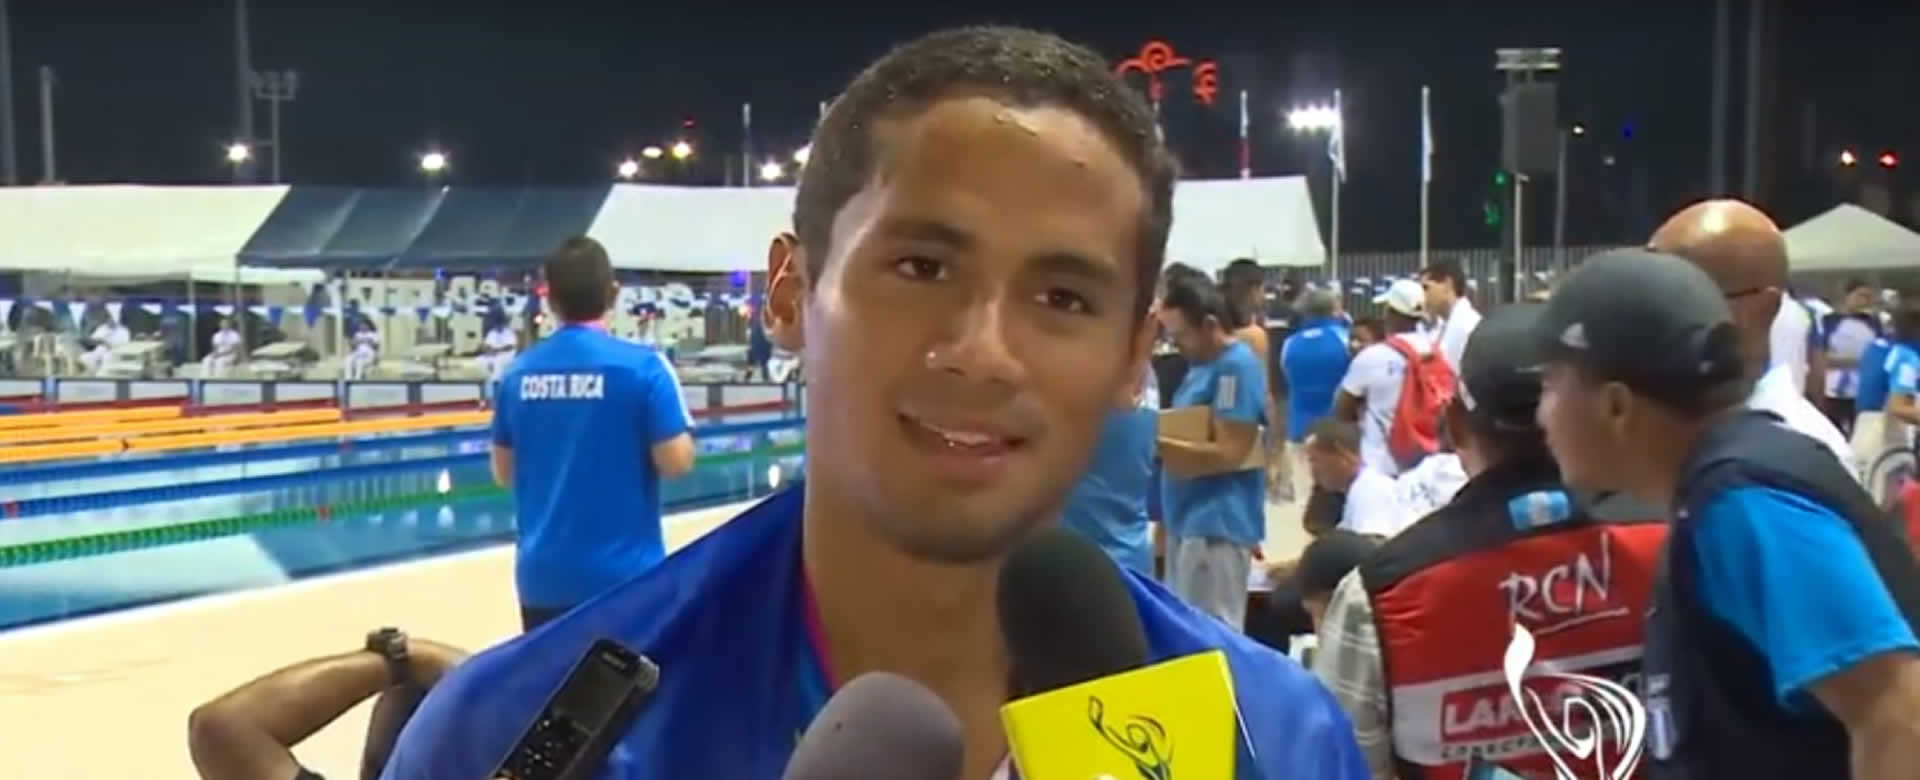 Miguel Mena obtiene medalla de plata en Natación Masculino